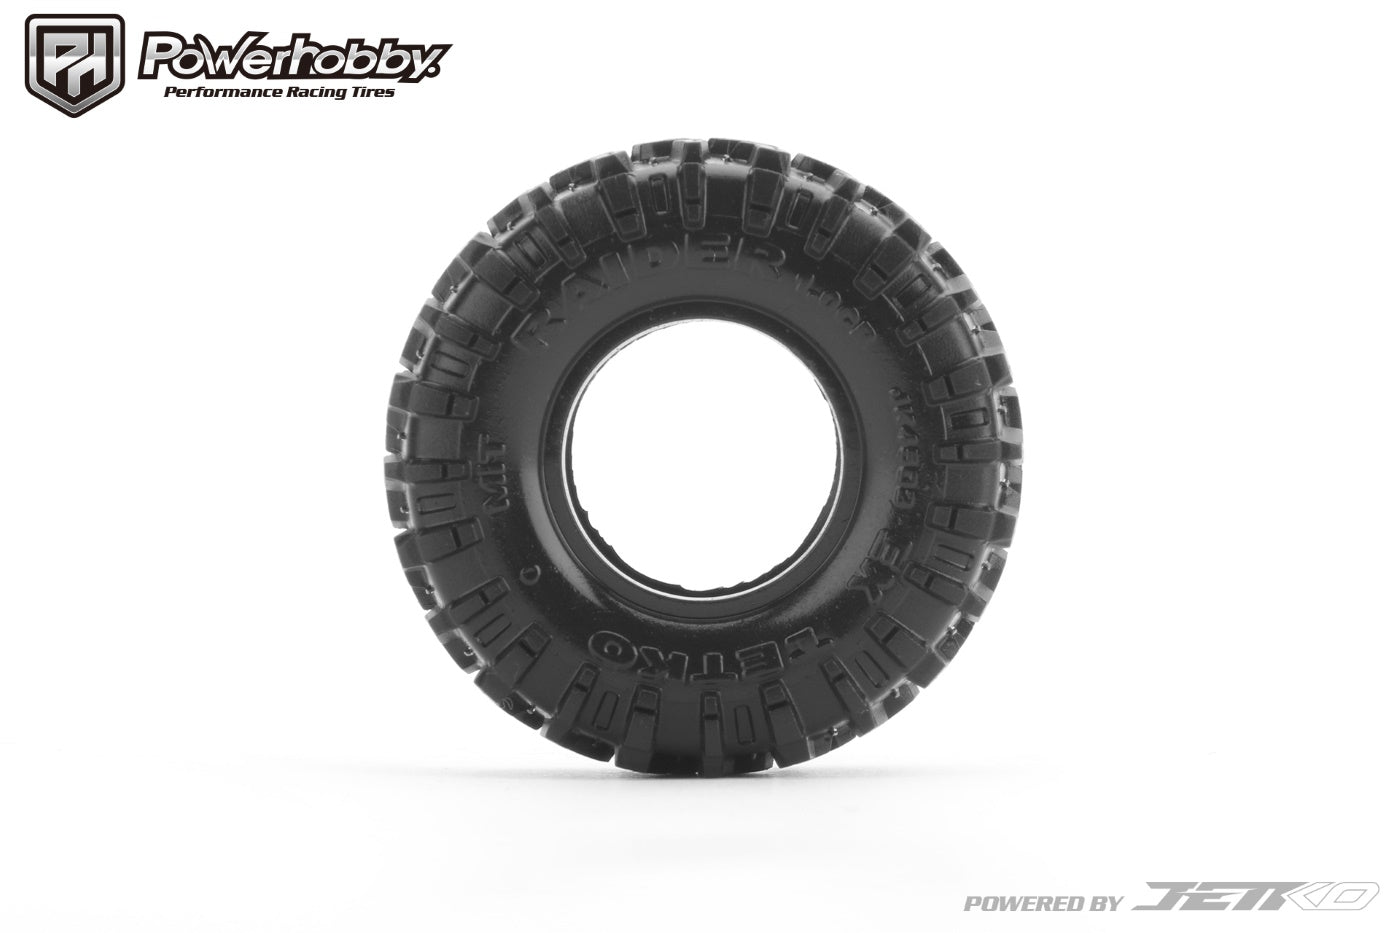 Powerhobby Raider 1.0” Micro Crawler Tires 1/24 Rock Crawler Axial SCX24.